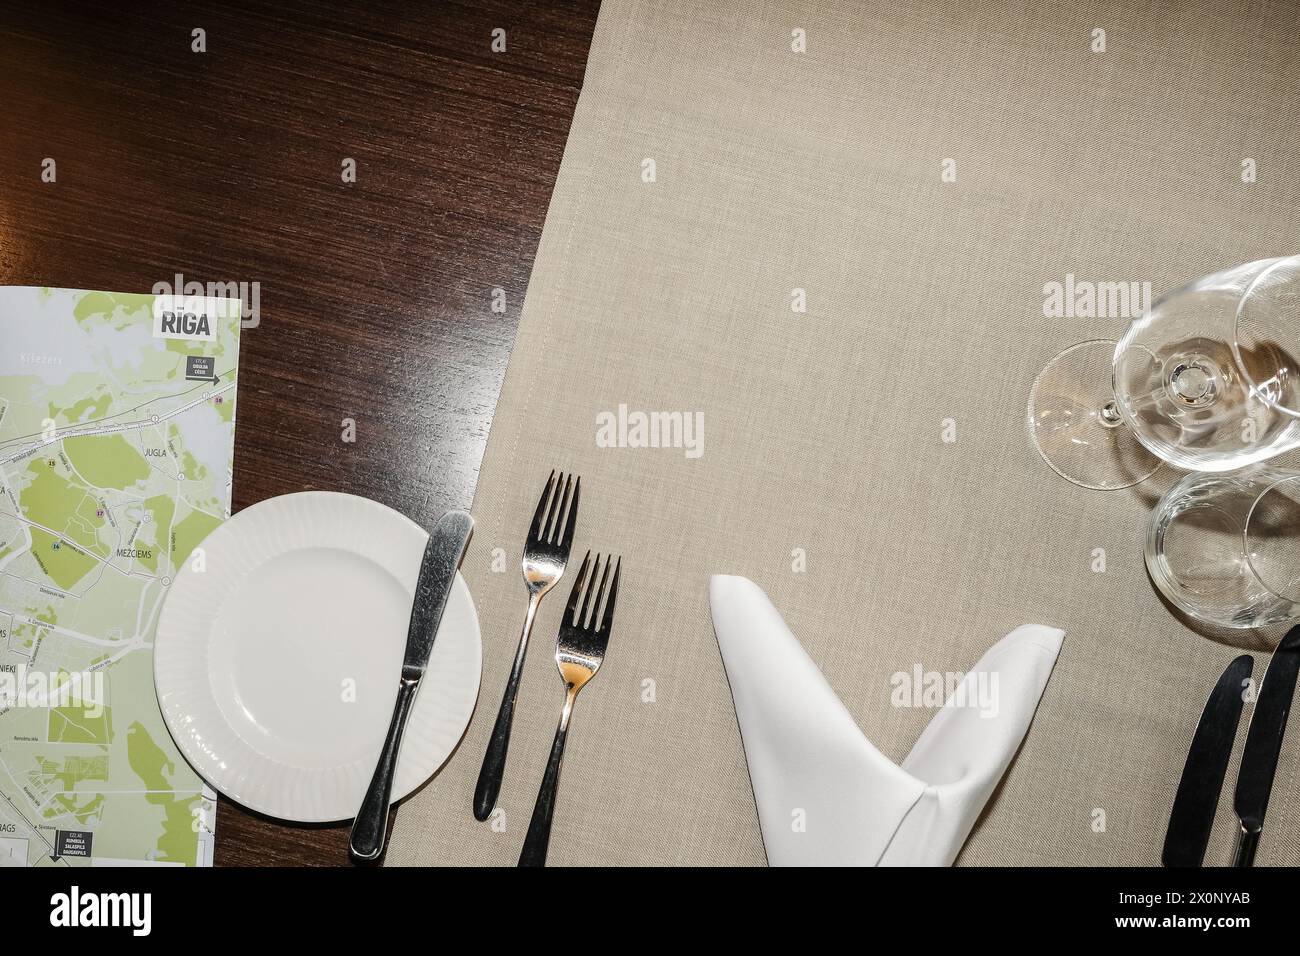 Vue de dessus d'une table servie dans un restaurant avec des plats et des verres pour la nourriture et les boissons et une carte de Riga, Lettonie pour un voyageur. Banque D'Images